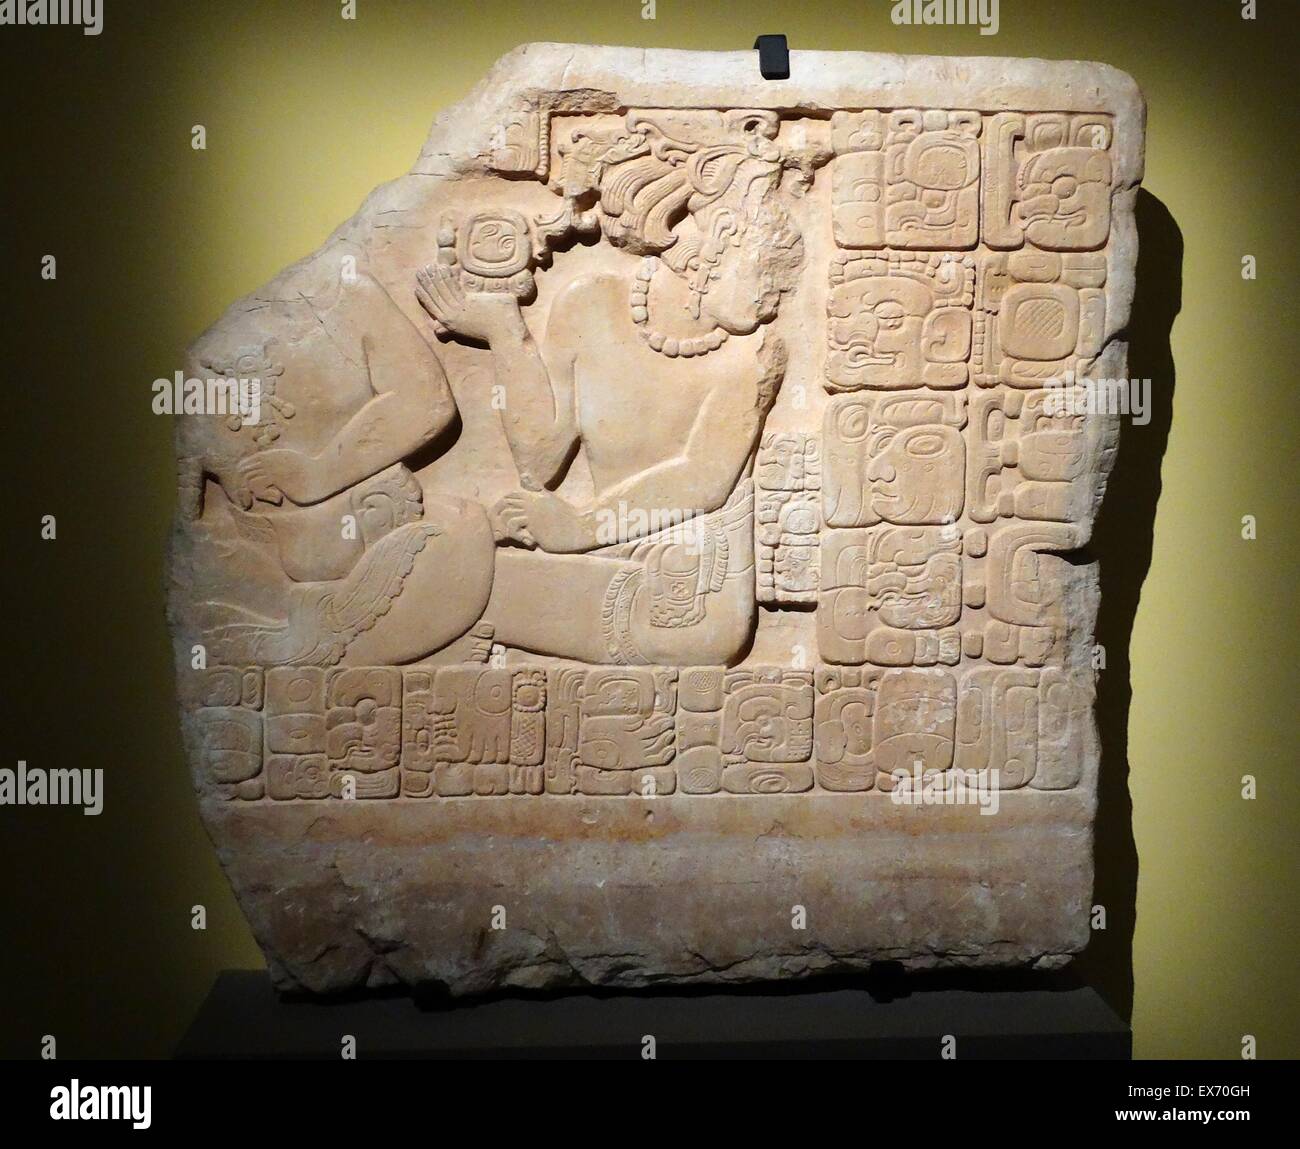 Panel 1 von Pomona. Auf der linken Seite ist die partielle Darstellung von Muyaal Hix Chaak, Herrscher von Pomona, eine Maya-Stätte, östlich von Palenque. Auf der rechten Seite ein Sub-Lineal (Sajal) und Priester (ti'sak hu'n). Das Ereignis tritt auf, am Ende einer 3-Tages-Zeremonie anlässlich die en Stockfoto